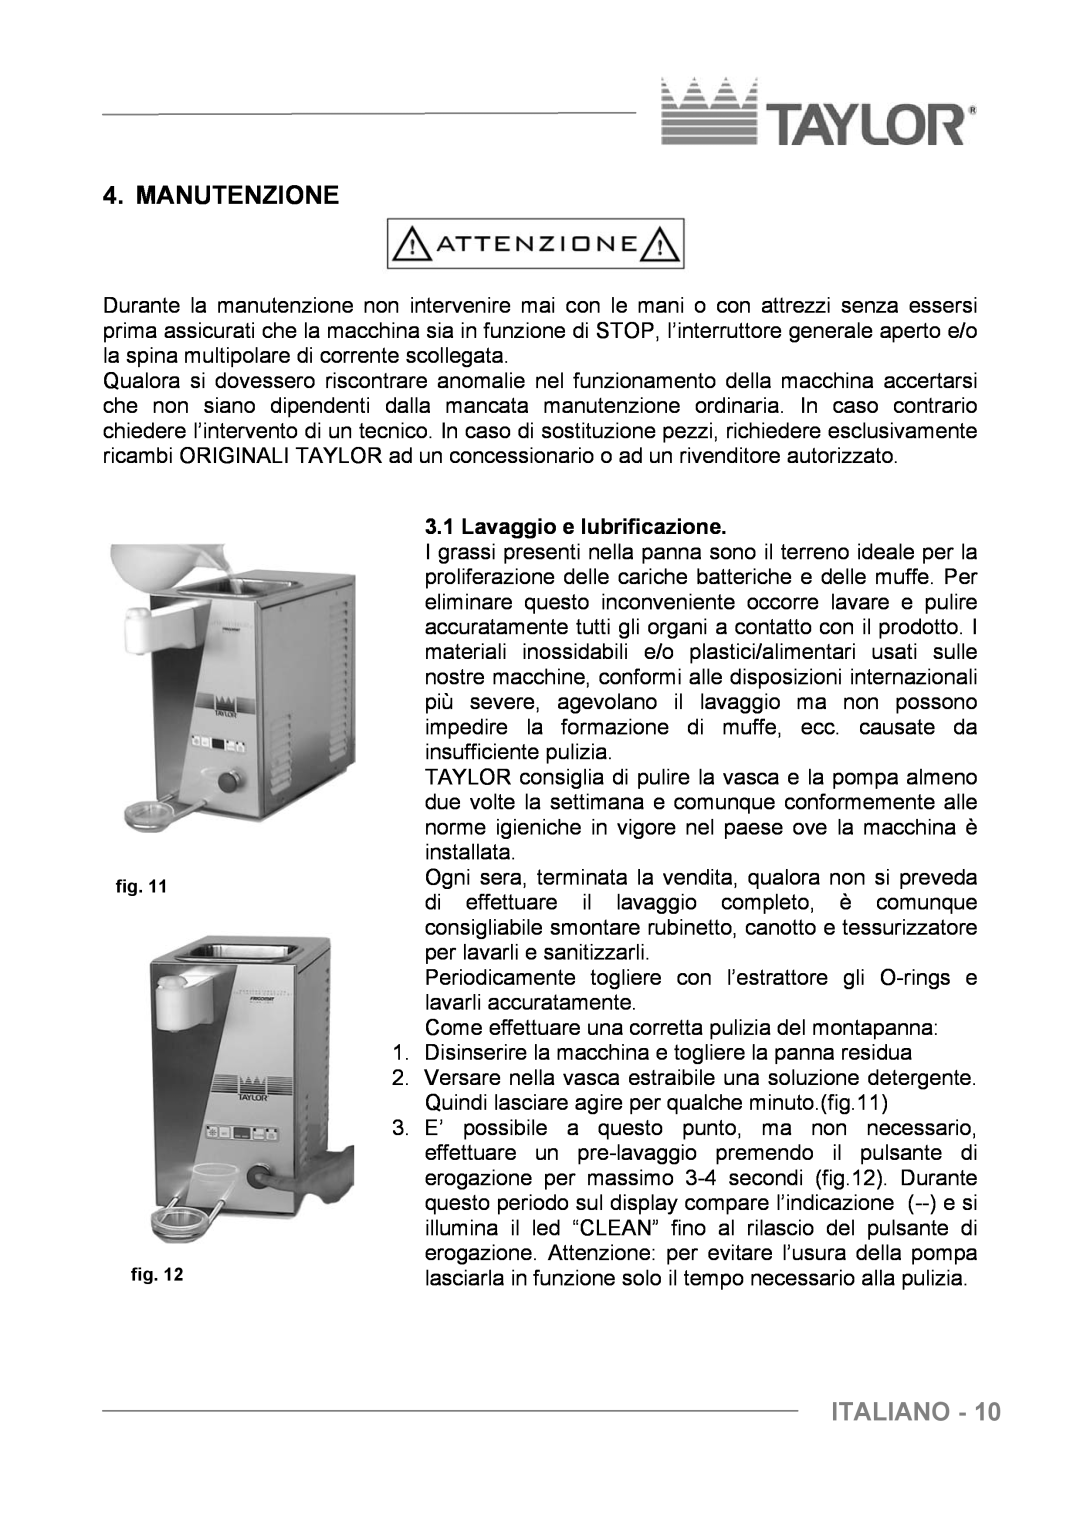 Taylor C004 - C007 manuel dutilisation Manutenzione, Italiano, Lavaggio e lubrificazione 